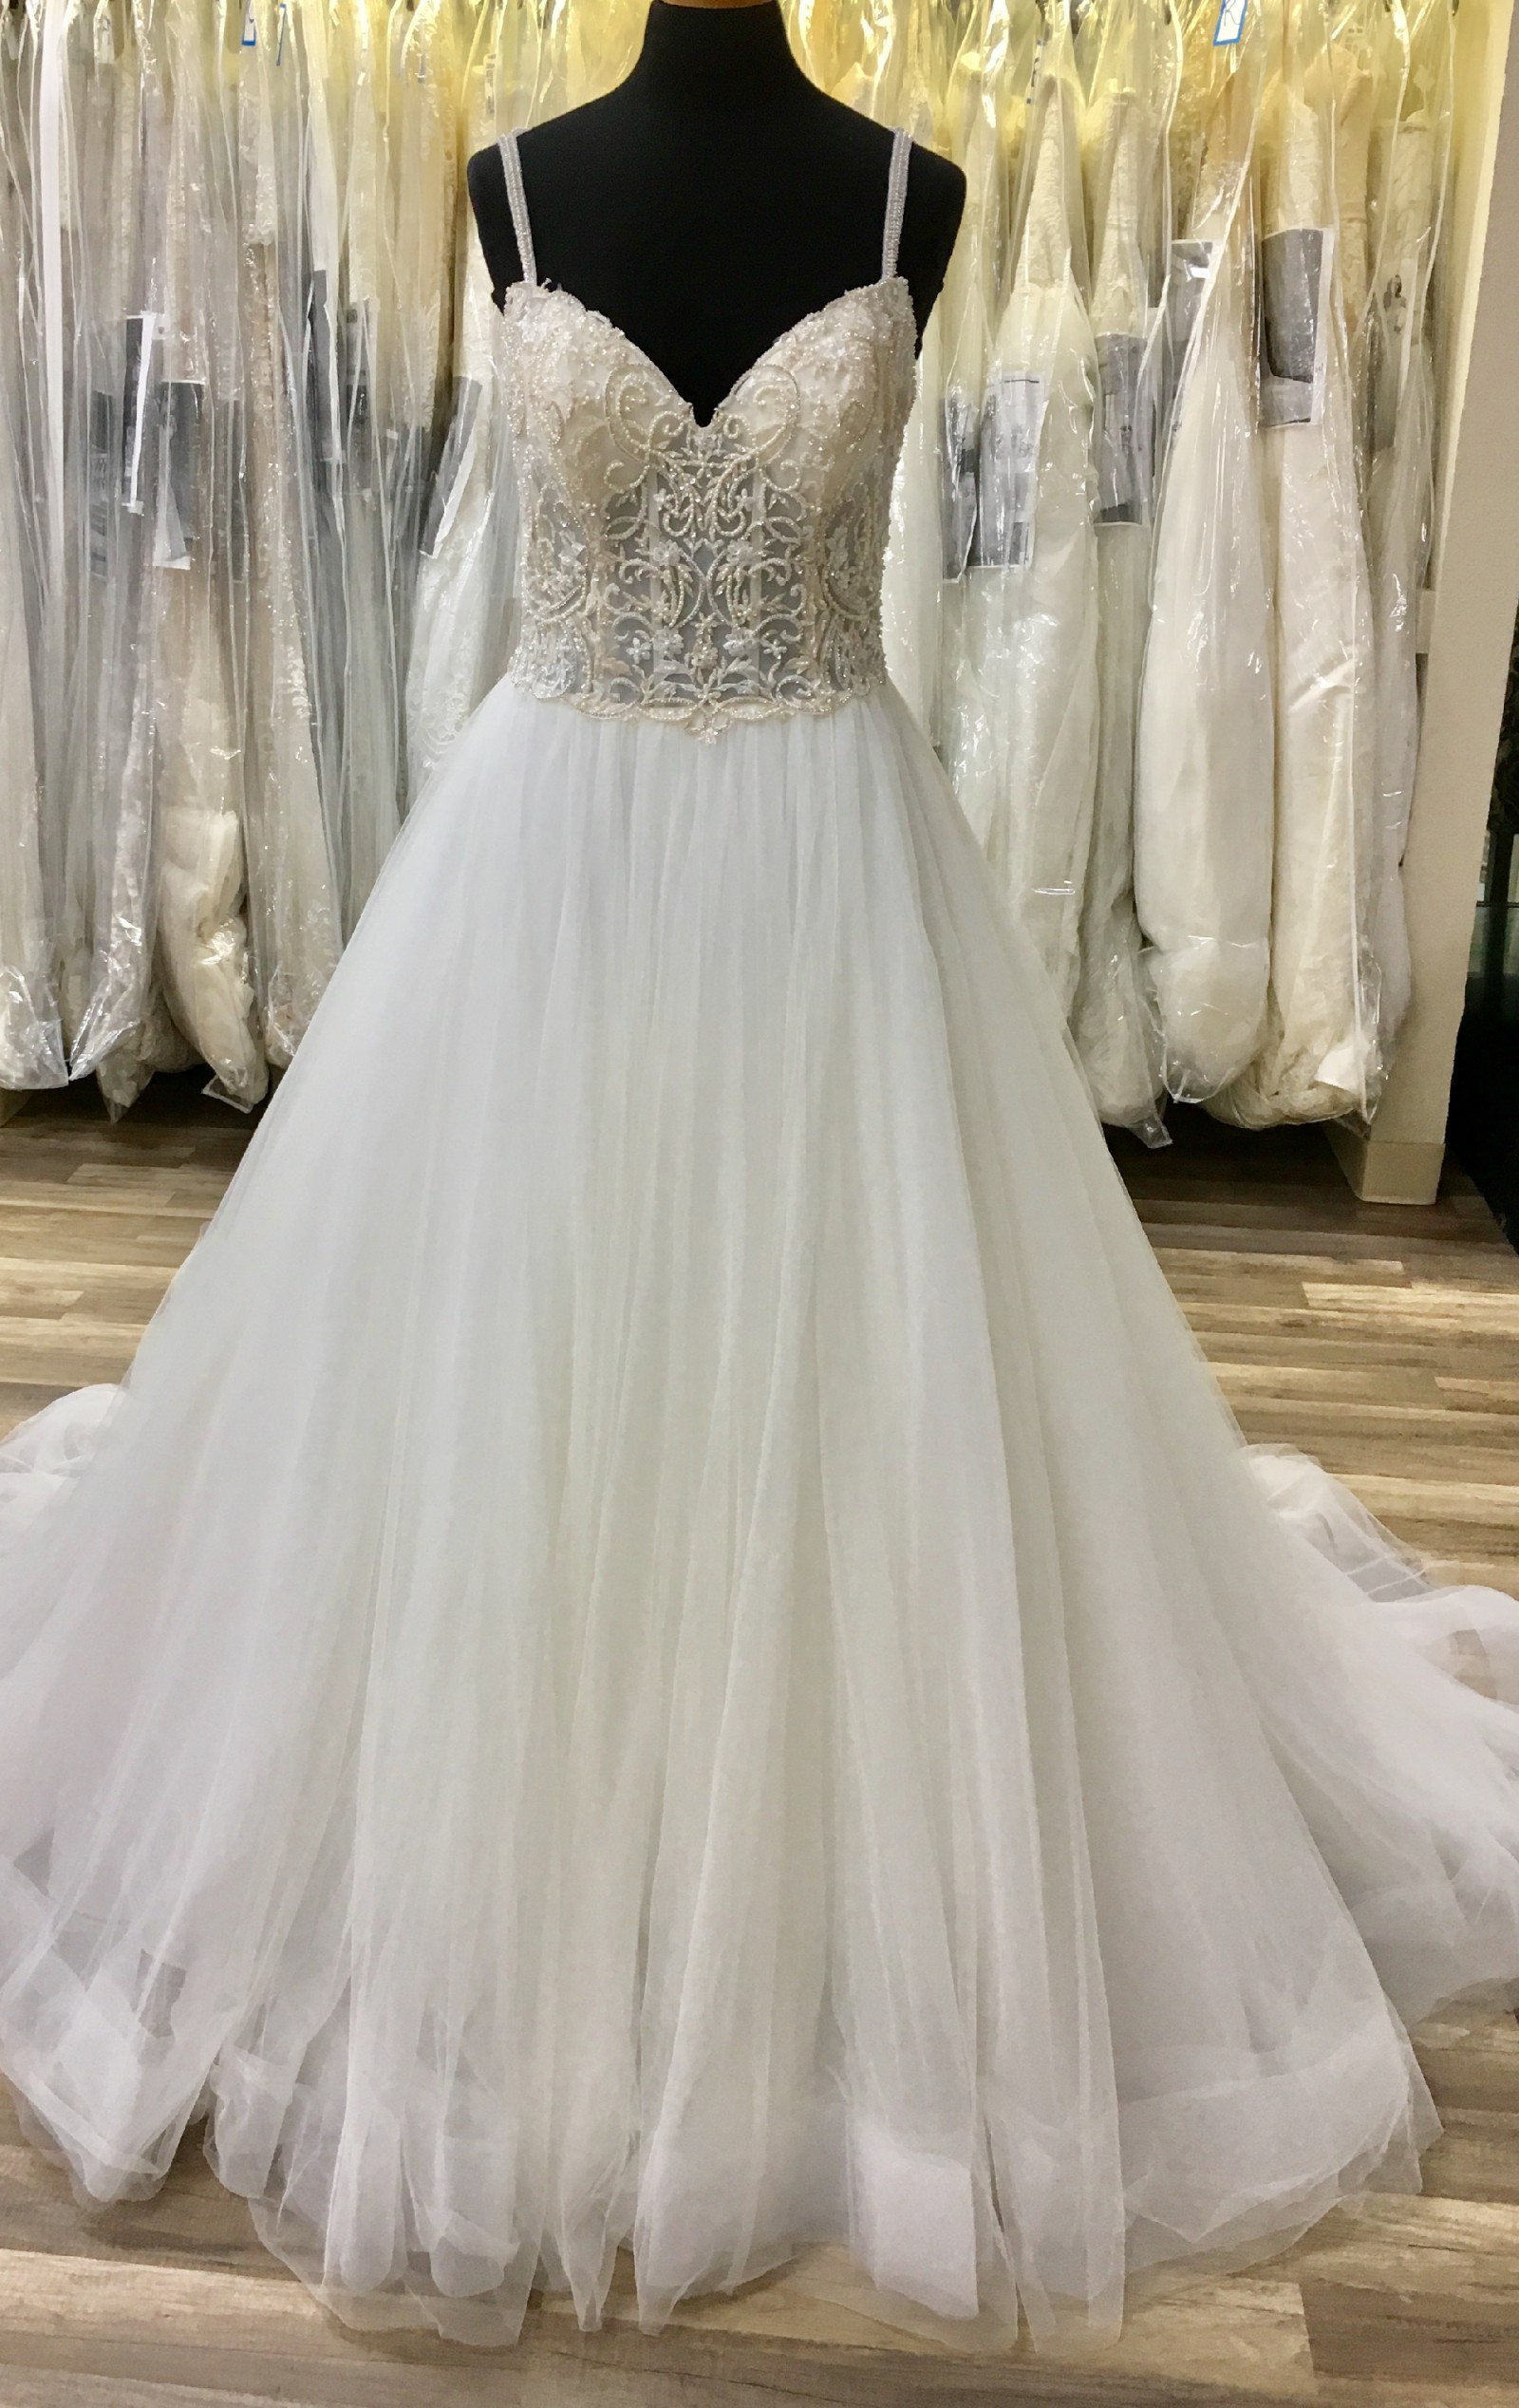 Maggie Sottero Janessa Marie New Wedding Dress Save 70% - Stillwhite